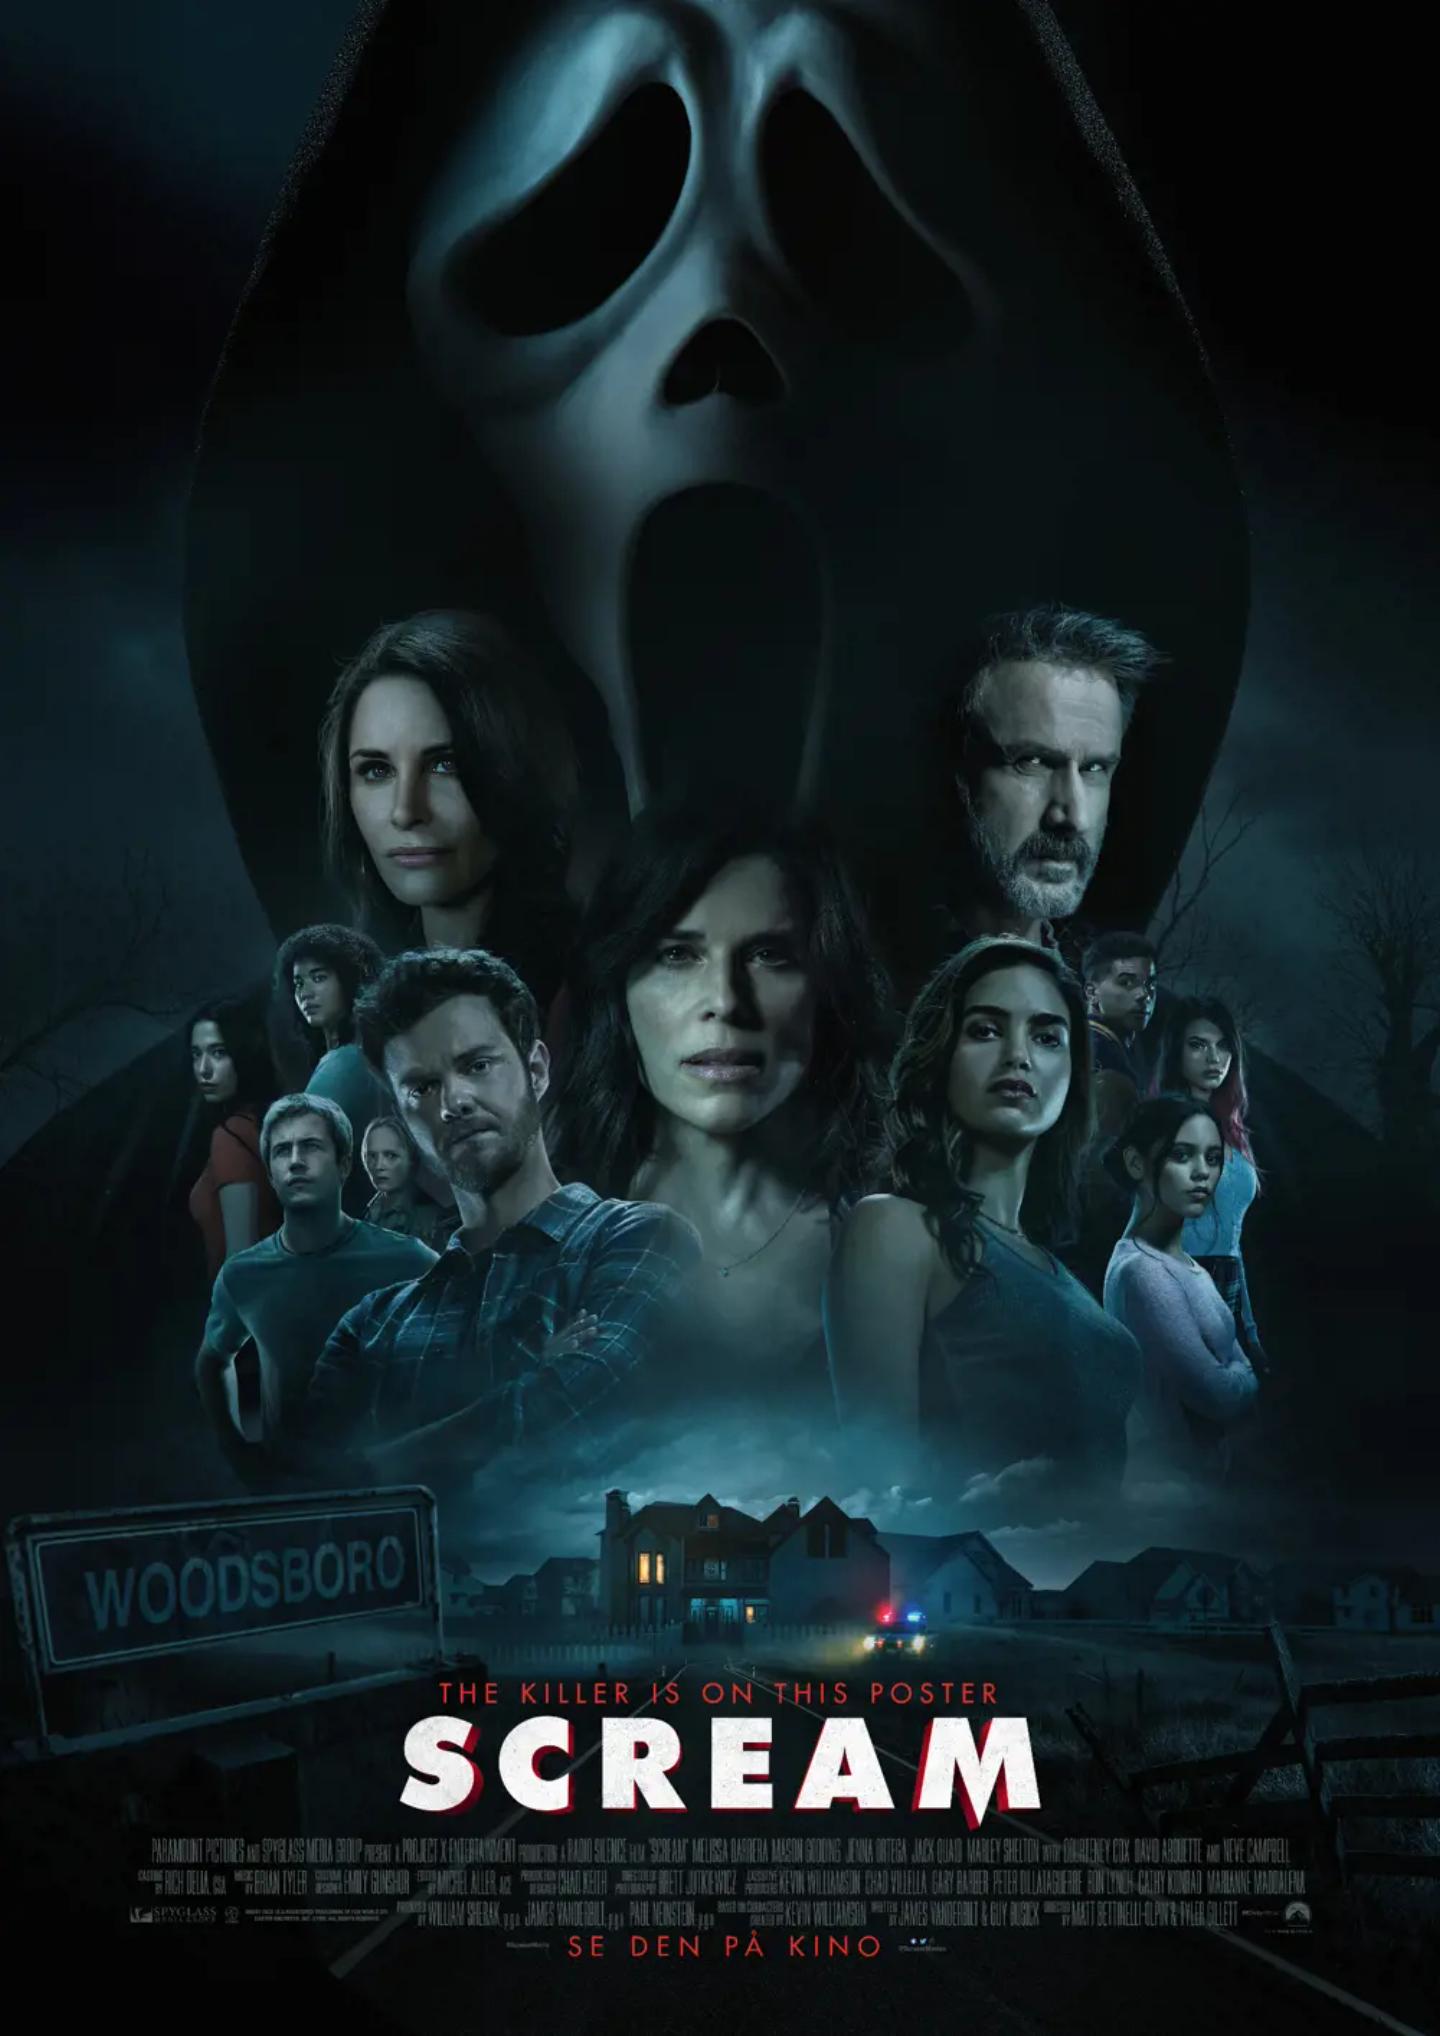 Plakat for 'Scream'